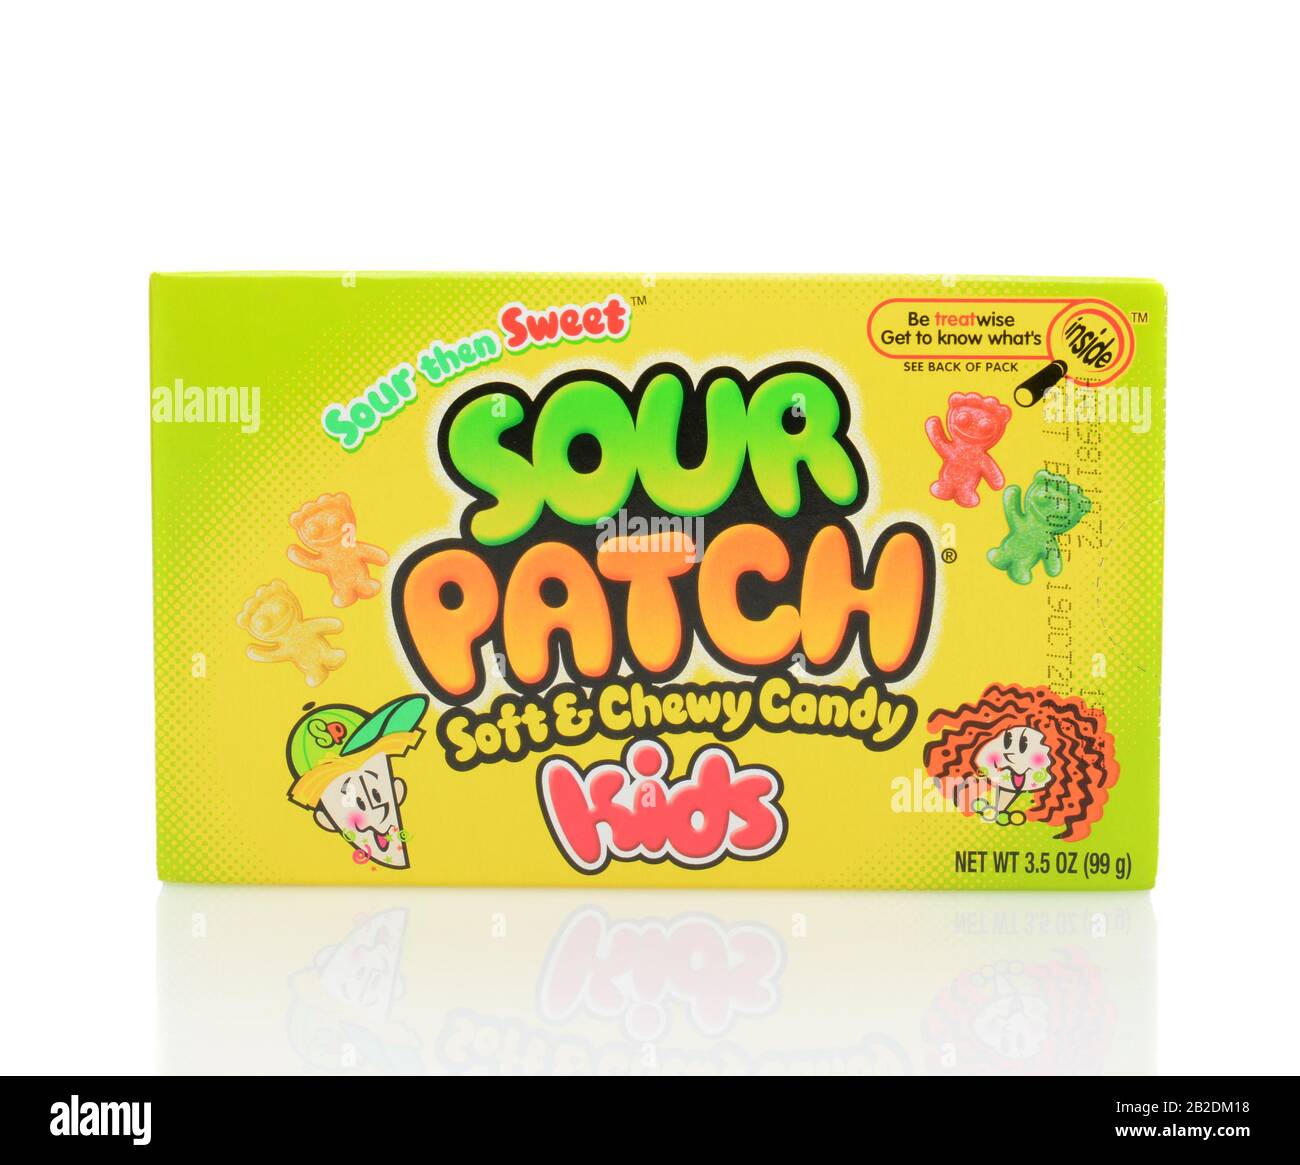 Irvine, CA - 23. JUNI 2014: Eine Kiste Mit Sour Patch Kids Candy. Die weiche und keulige Süßigkeit gehört der Cadbury Adams Company und wird in Kanada hergestellt. Stockfoto